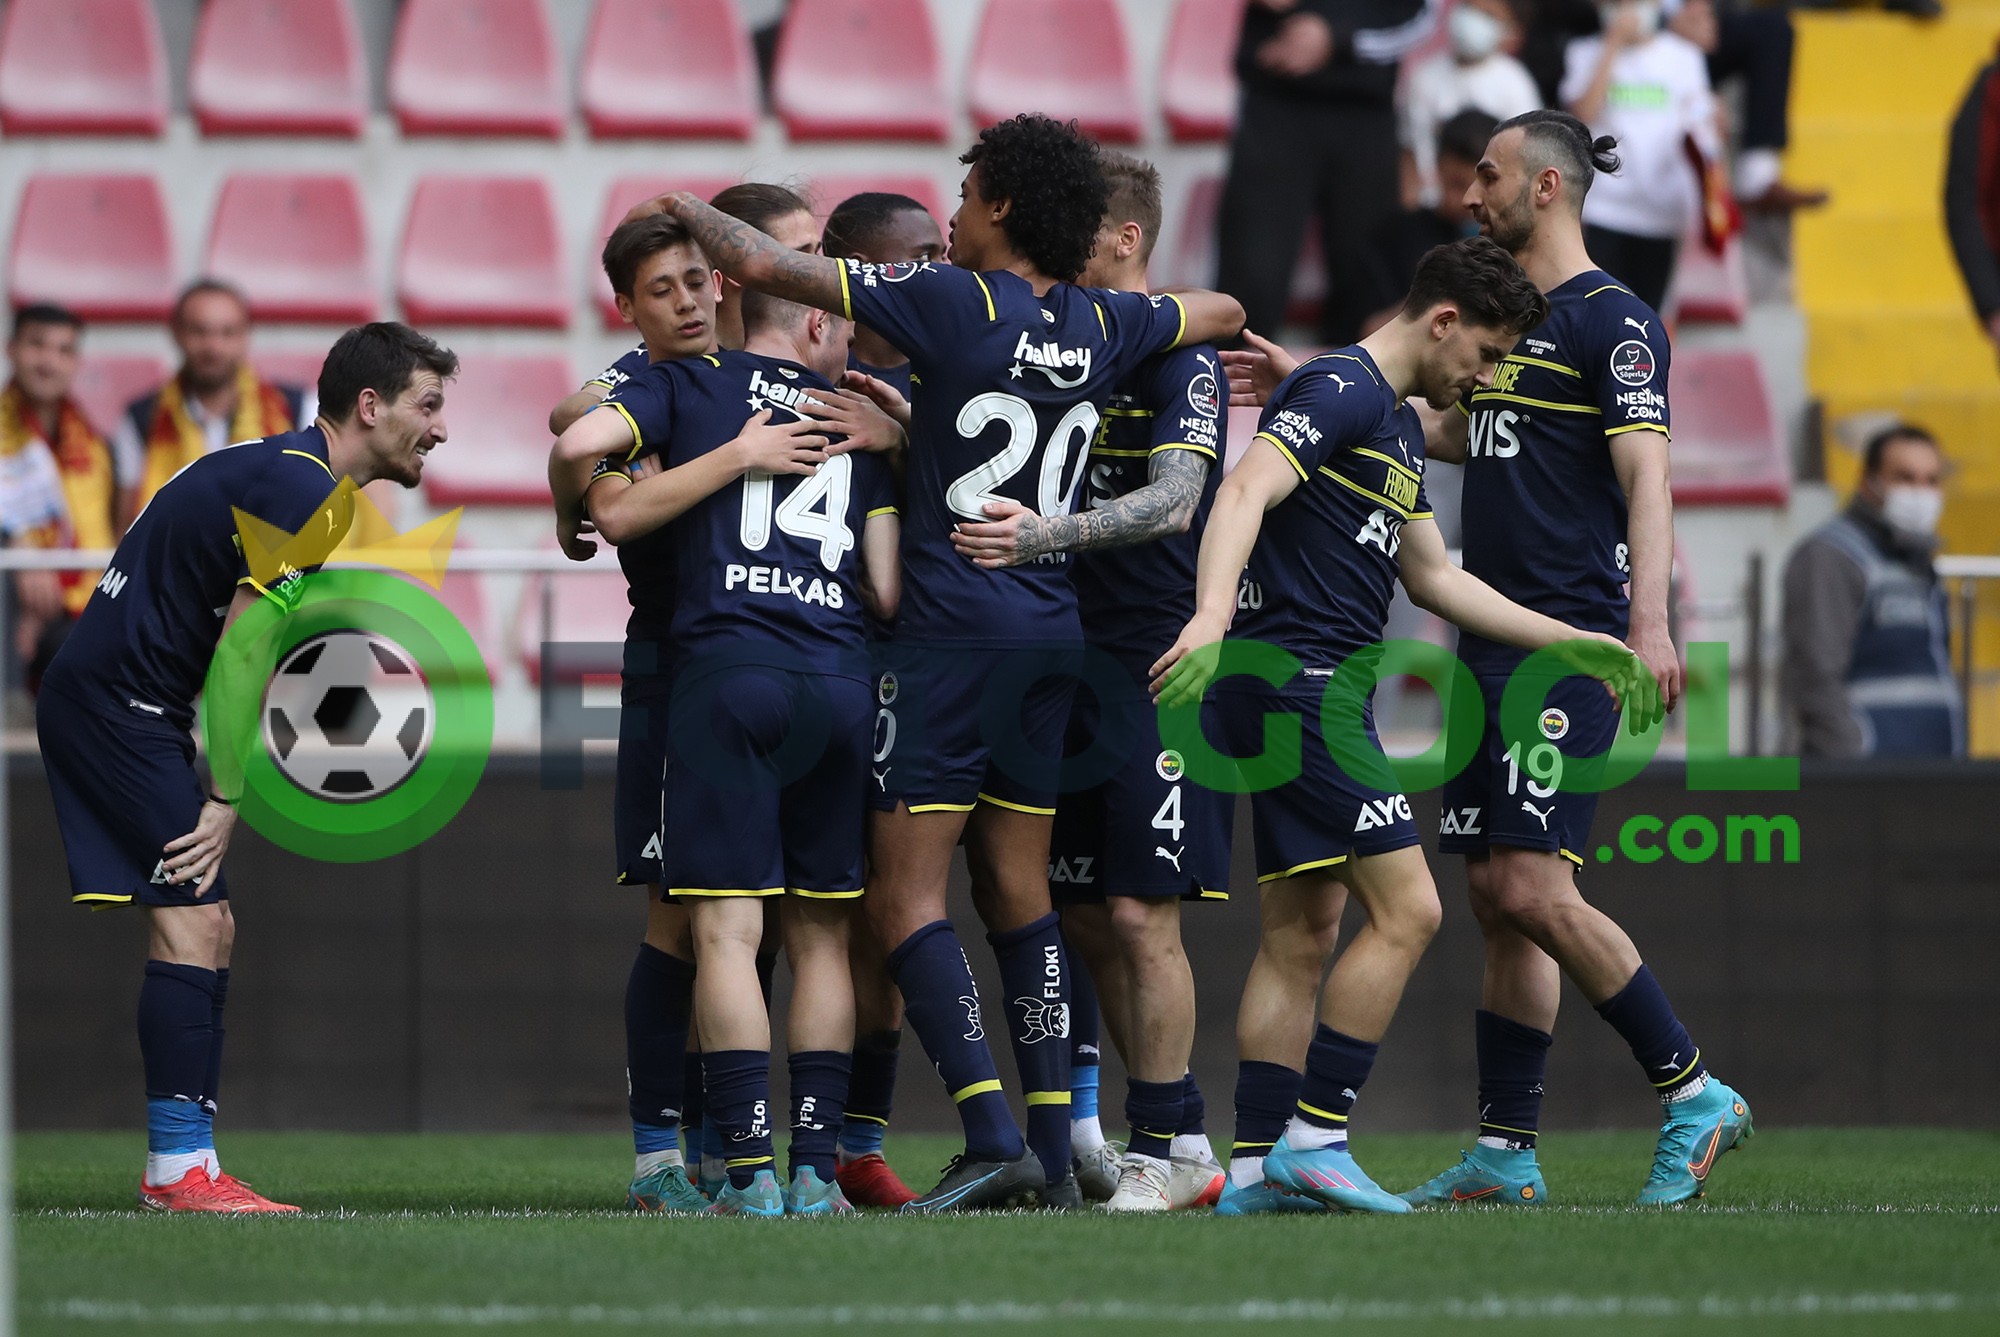 Fenerbahçe Seriye devam etti 0-4